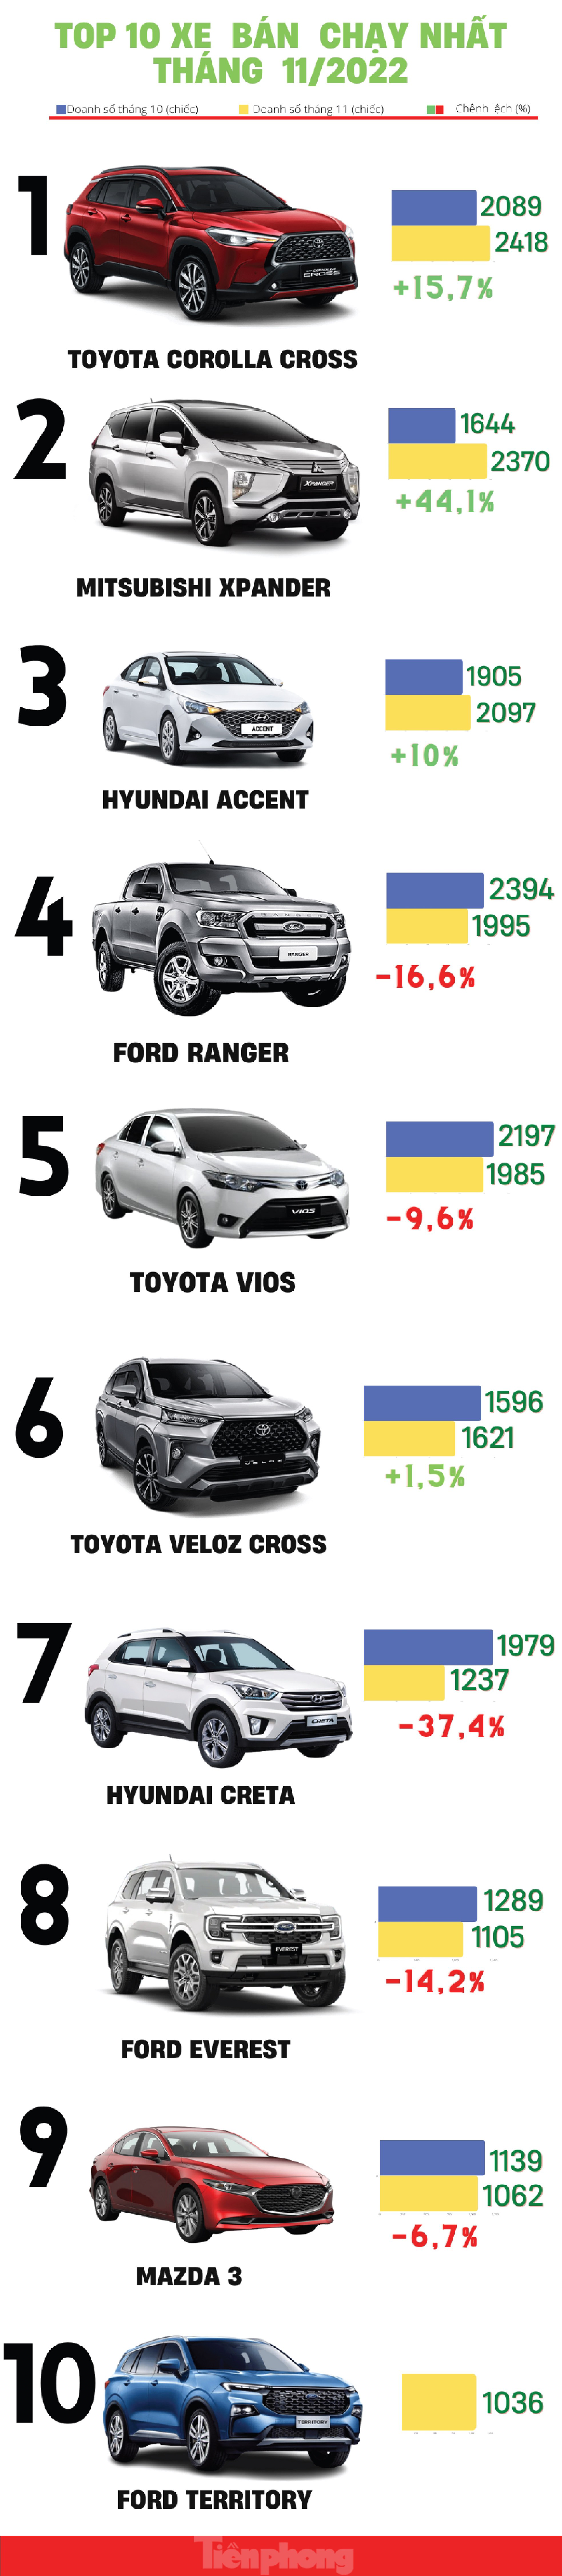 Top 10 ô tô bán chạy nhất tháng 11 tại Việt Nam - Ảnh 1.